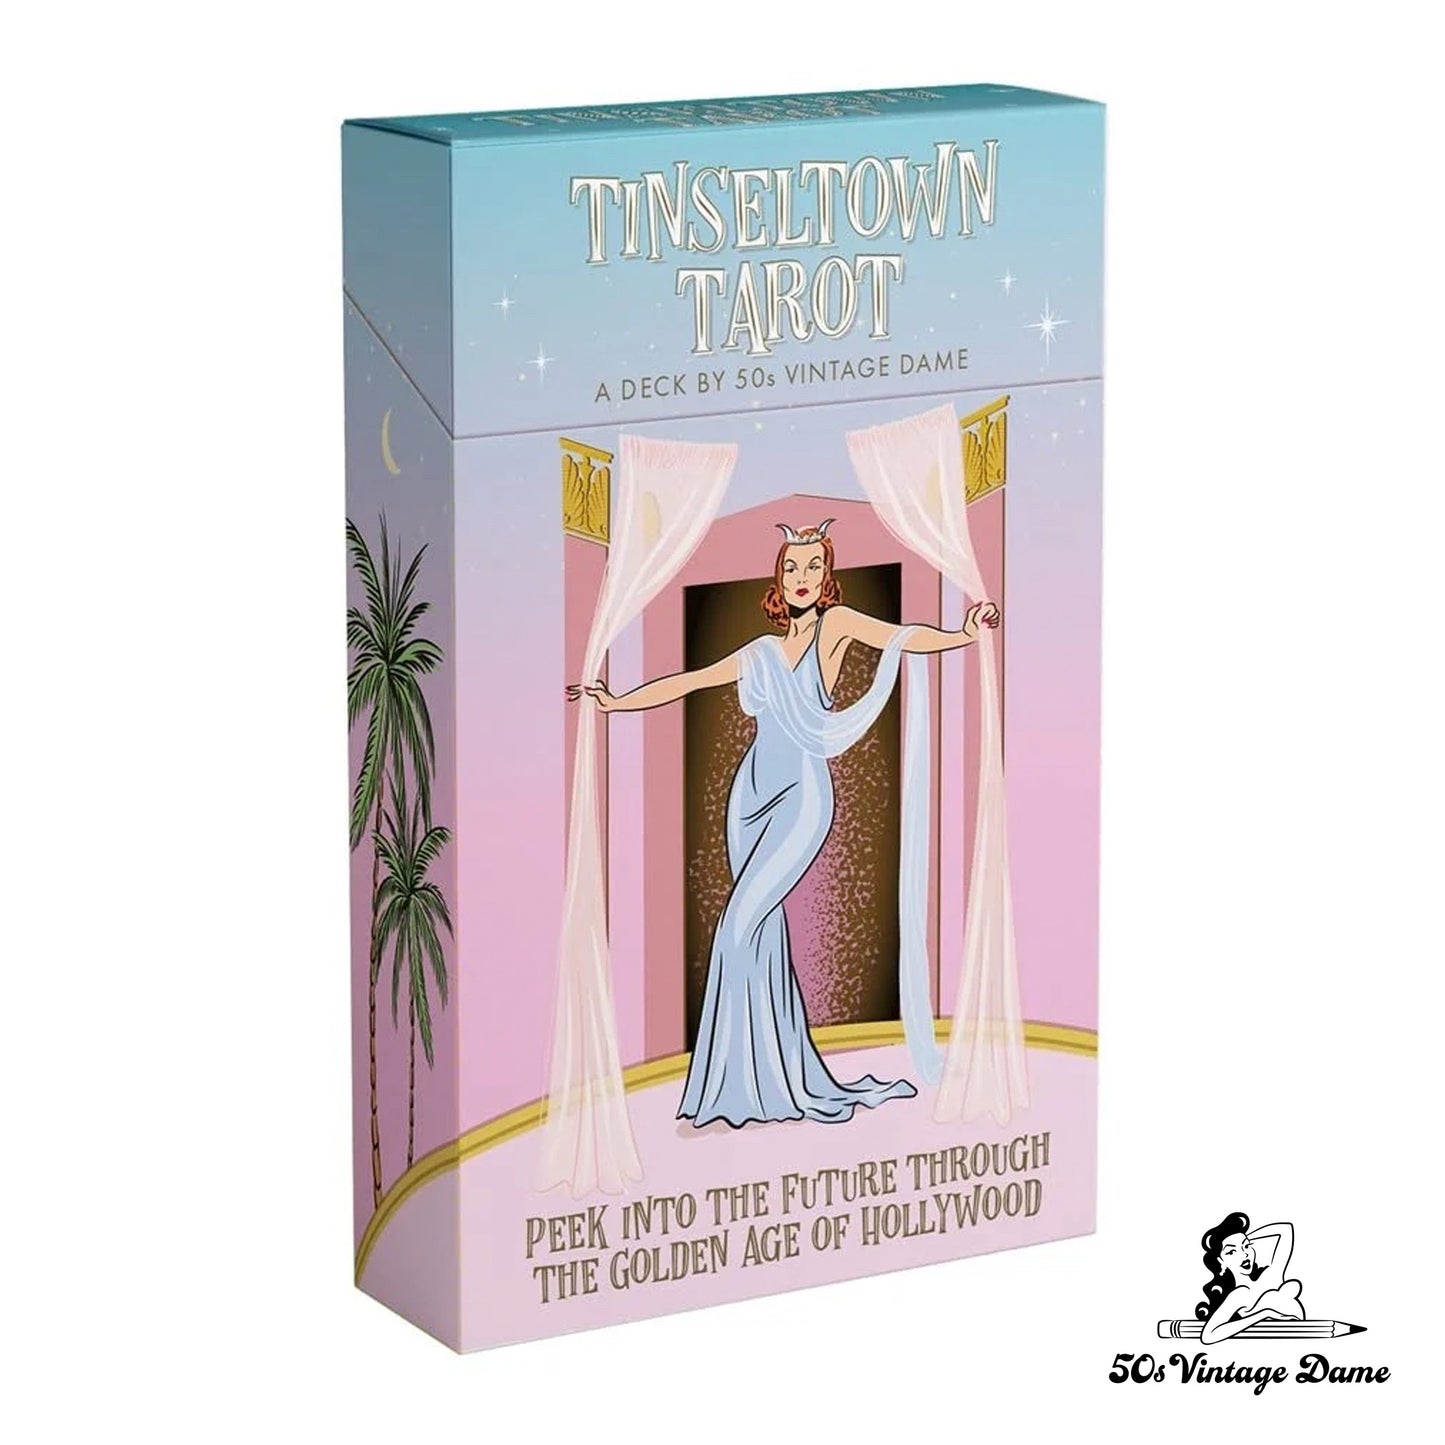 Tinseltown Tarot Card deck (Author-signed copy)